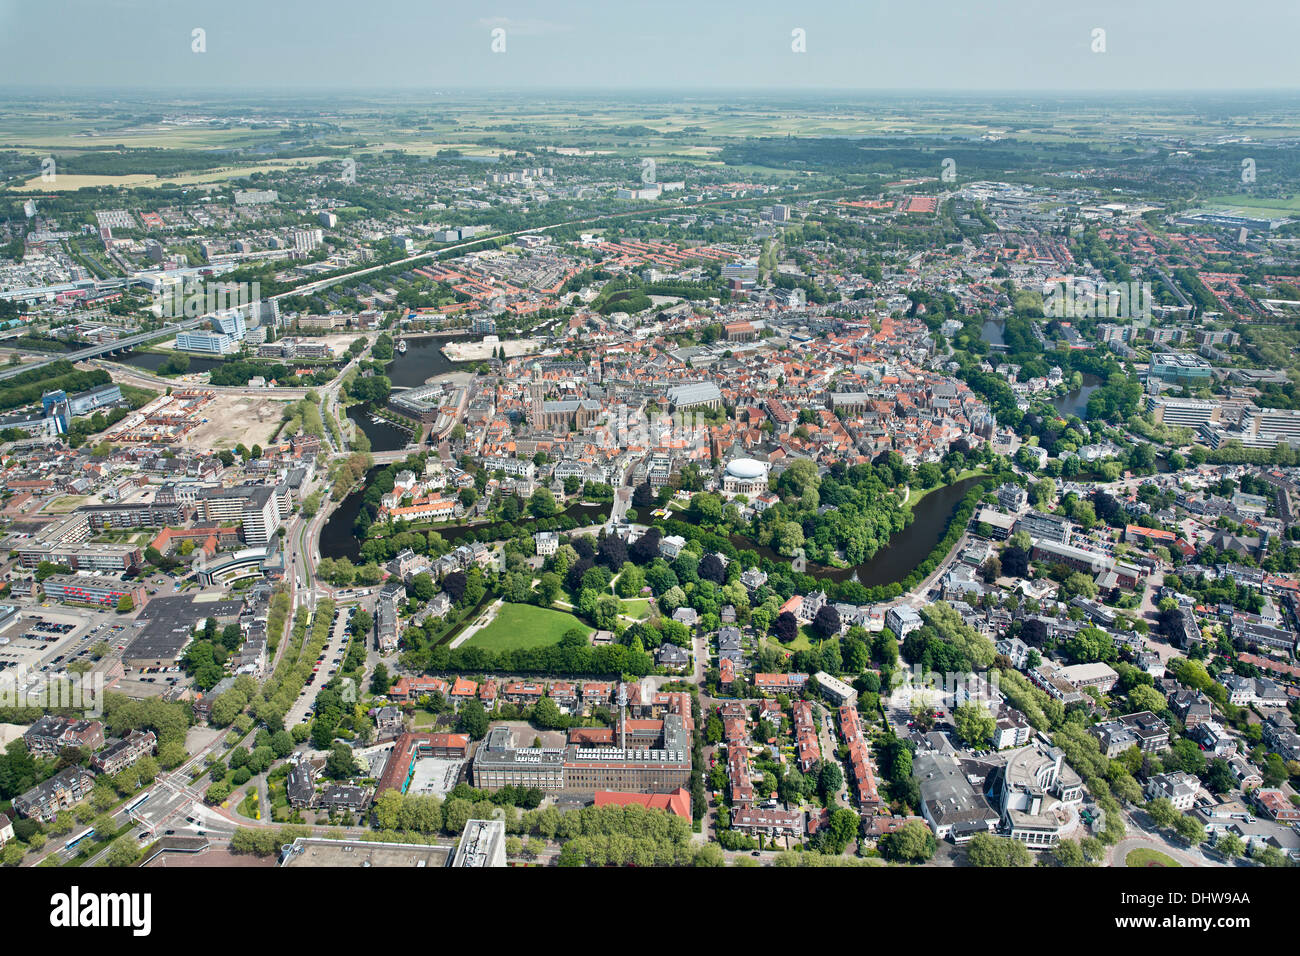 Holland, Zwolle, centro città, museo de Fundatie, interno sul tetto sembra come sfera di rugby. Bierman Henket architecten. Antenna Foto Stock